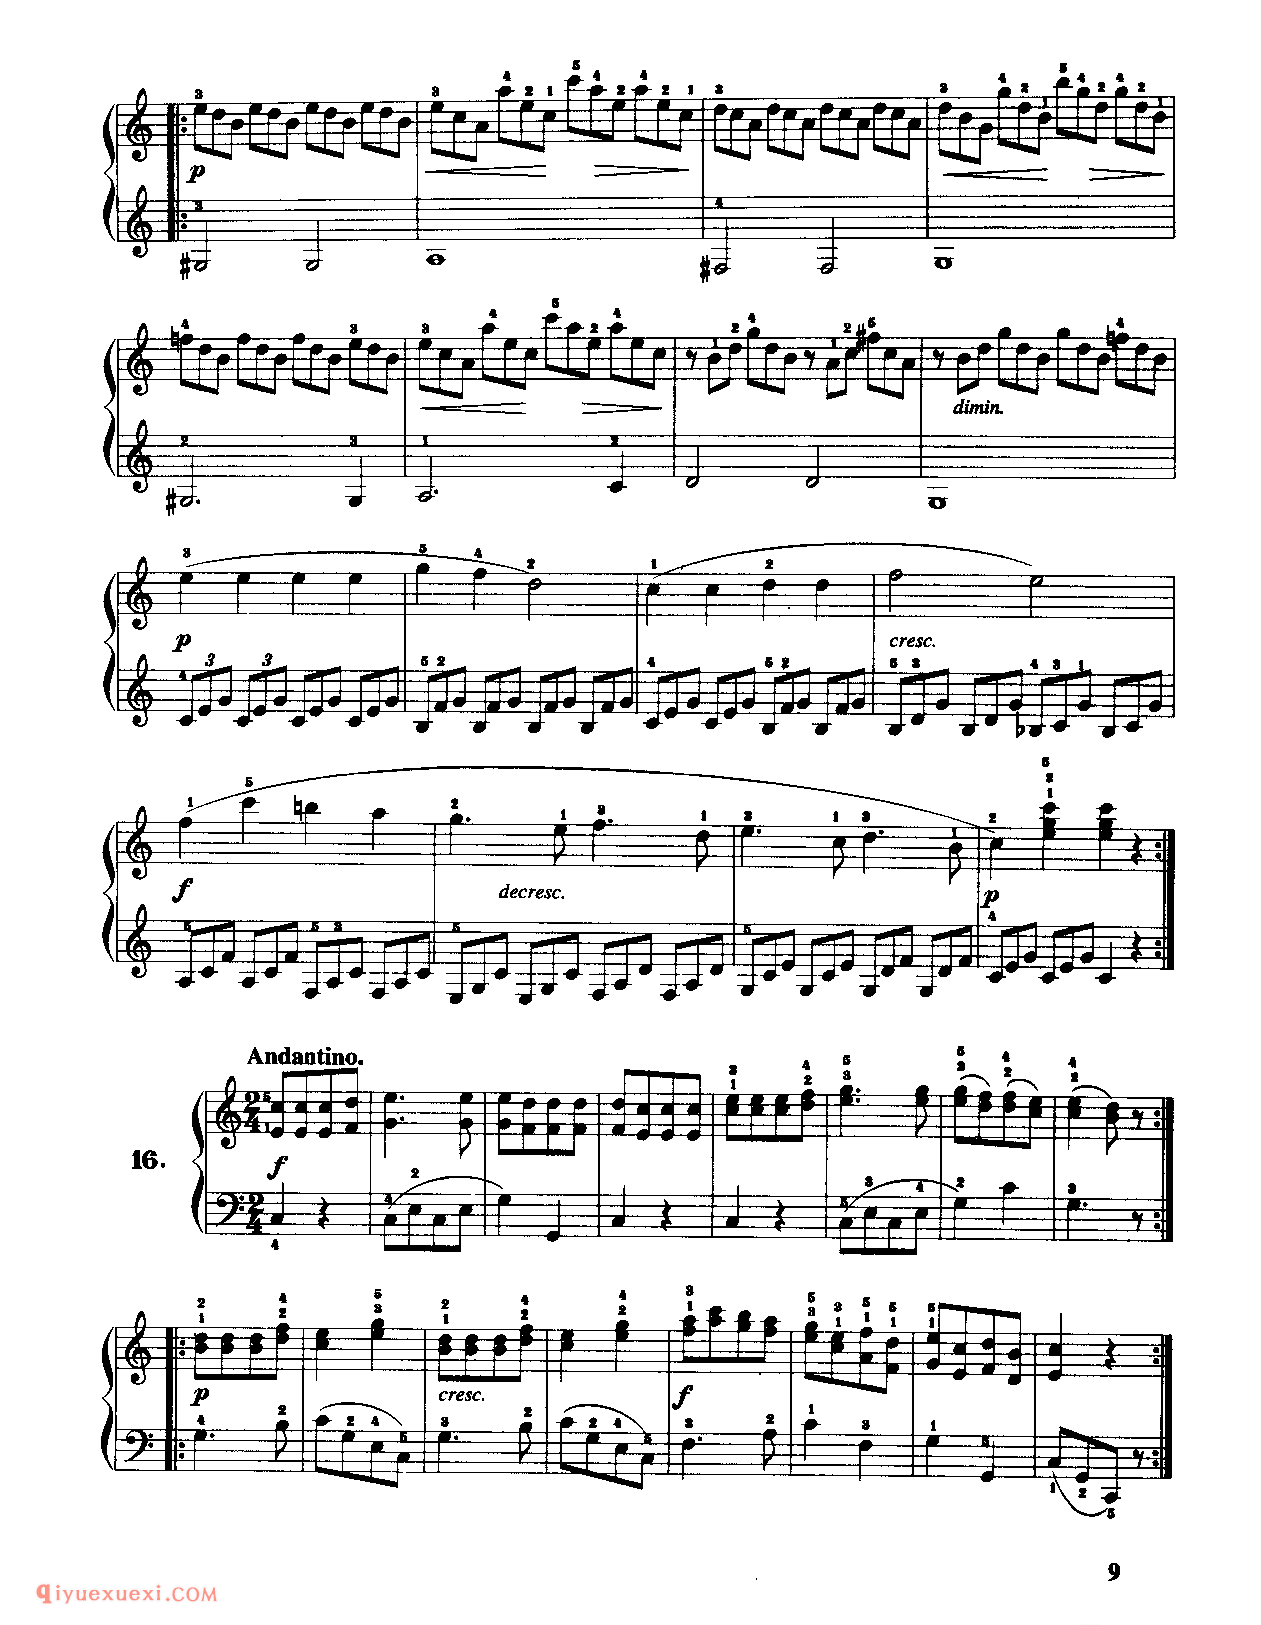 100首简易钢琴练习曲(作品139)_车尔尼钢琴练习曲集